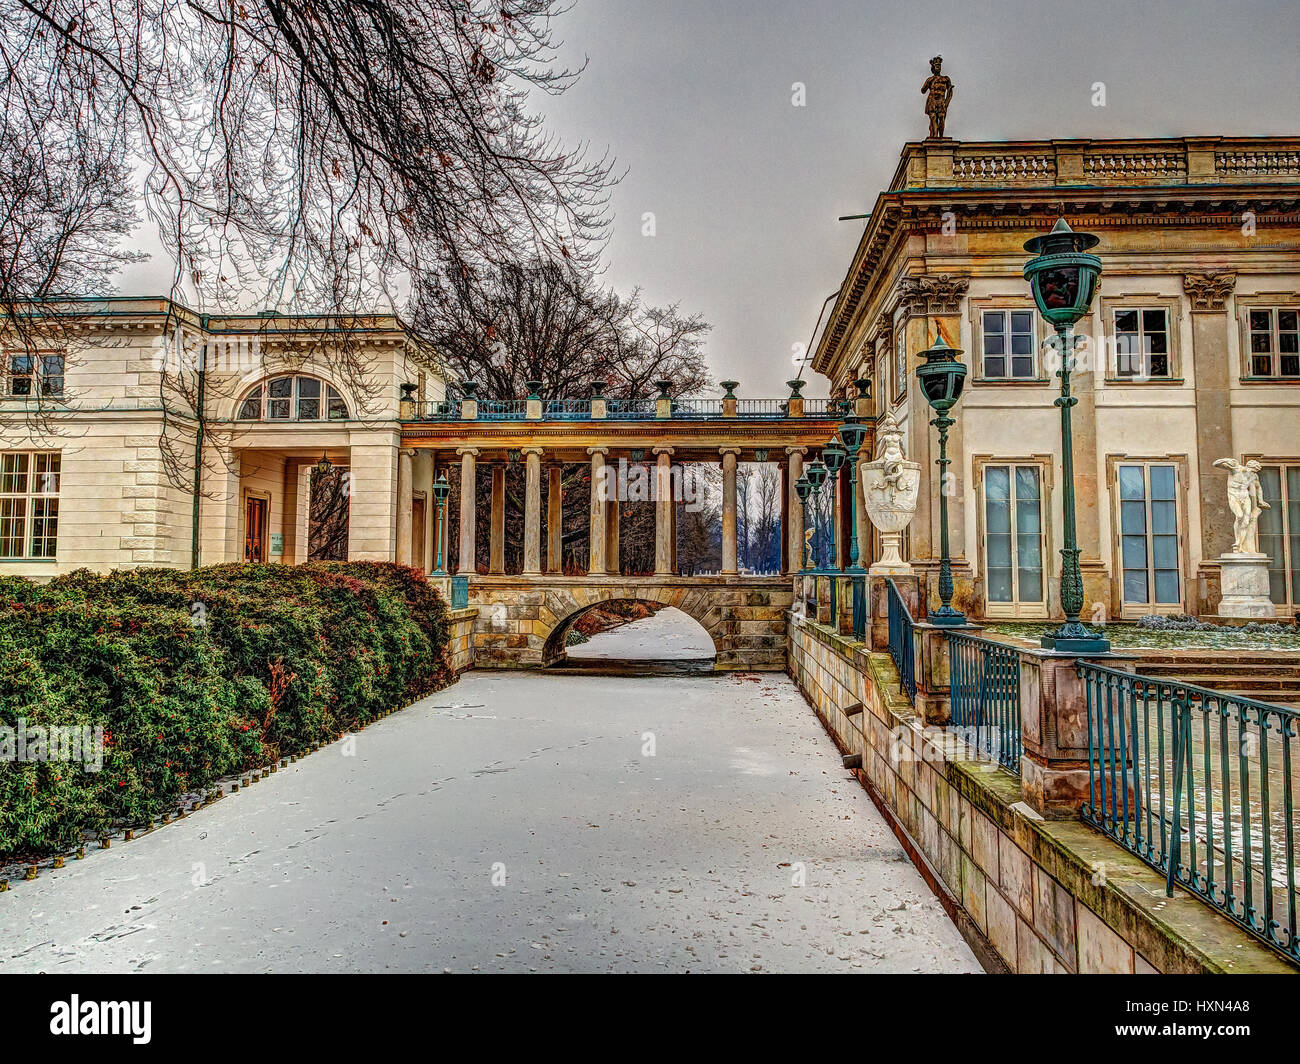 Varsovie, Pologne - janvier 01, 2016 : Un palais sur l'eau Les "" dans le parc Royal de Lazienki "" dans une scène d'hiver Banque D'Images